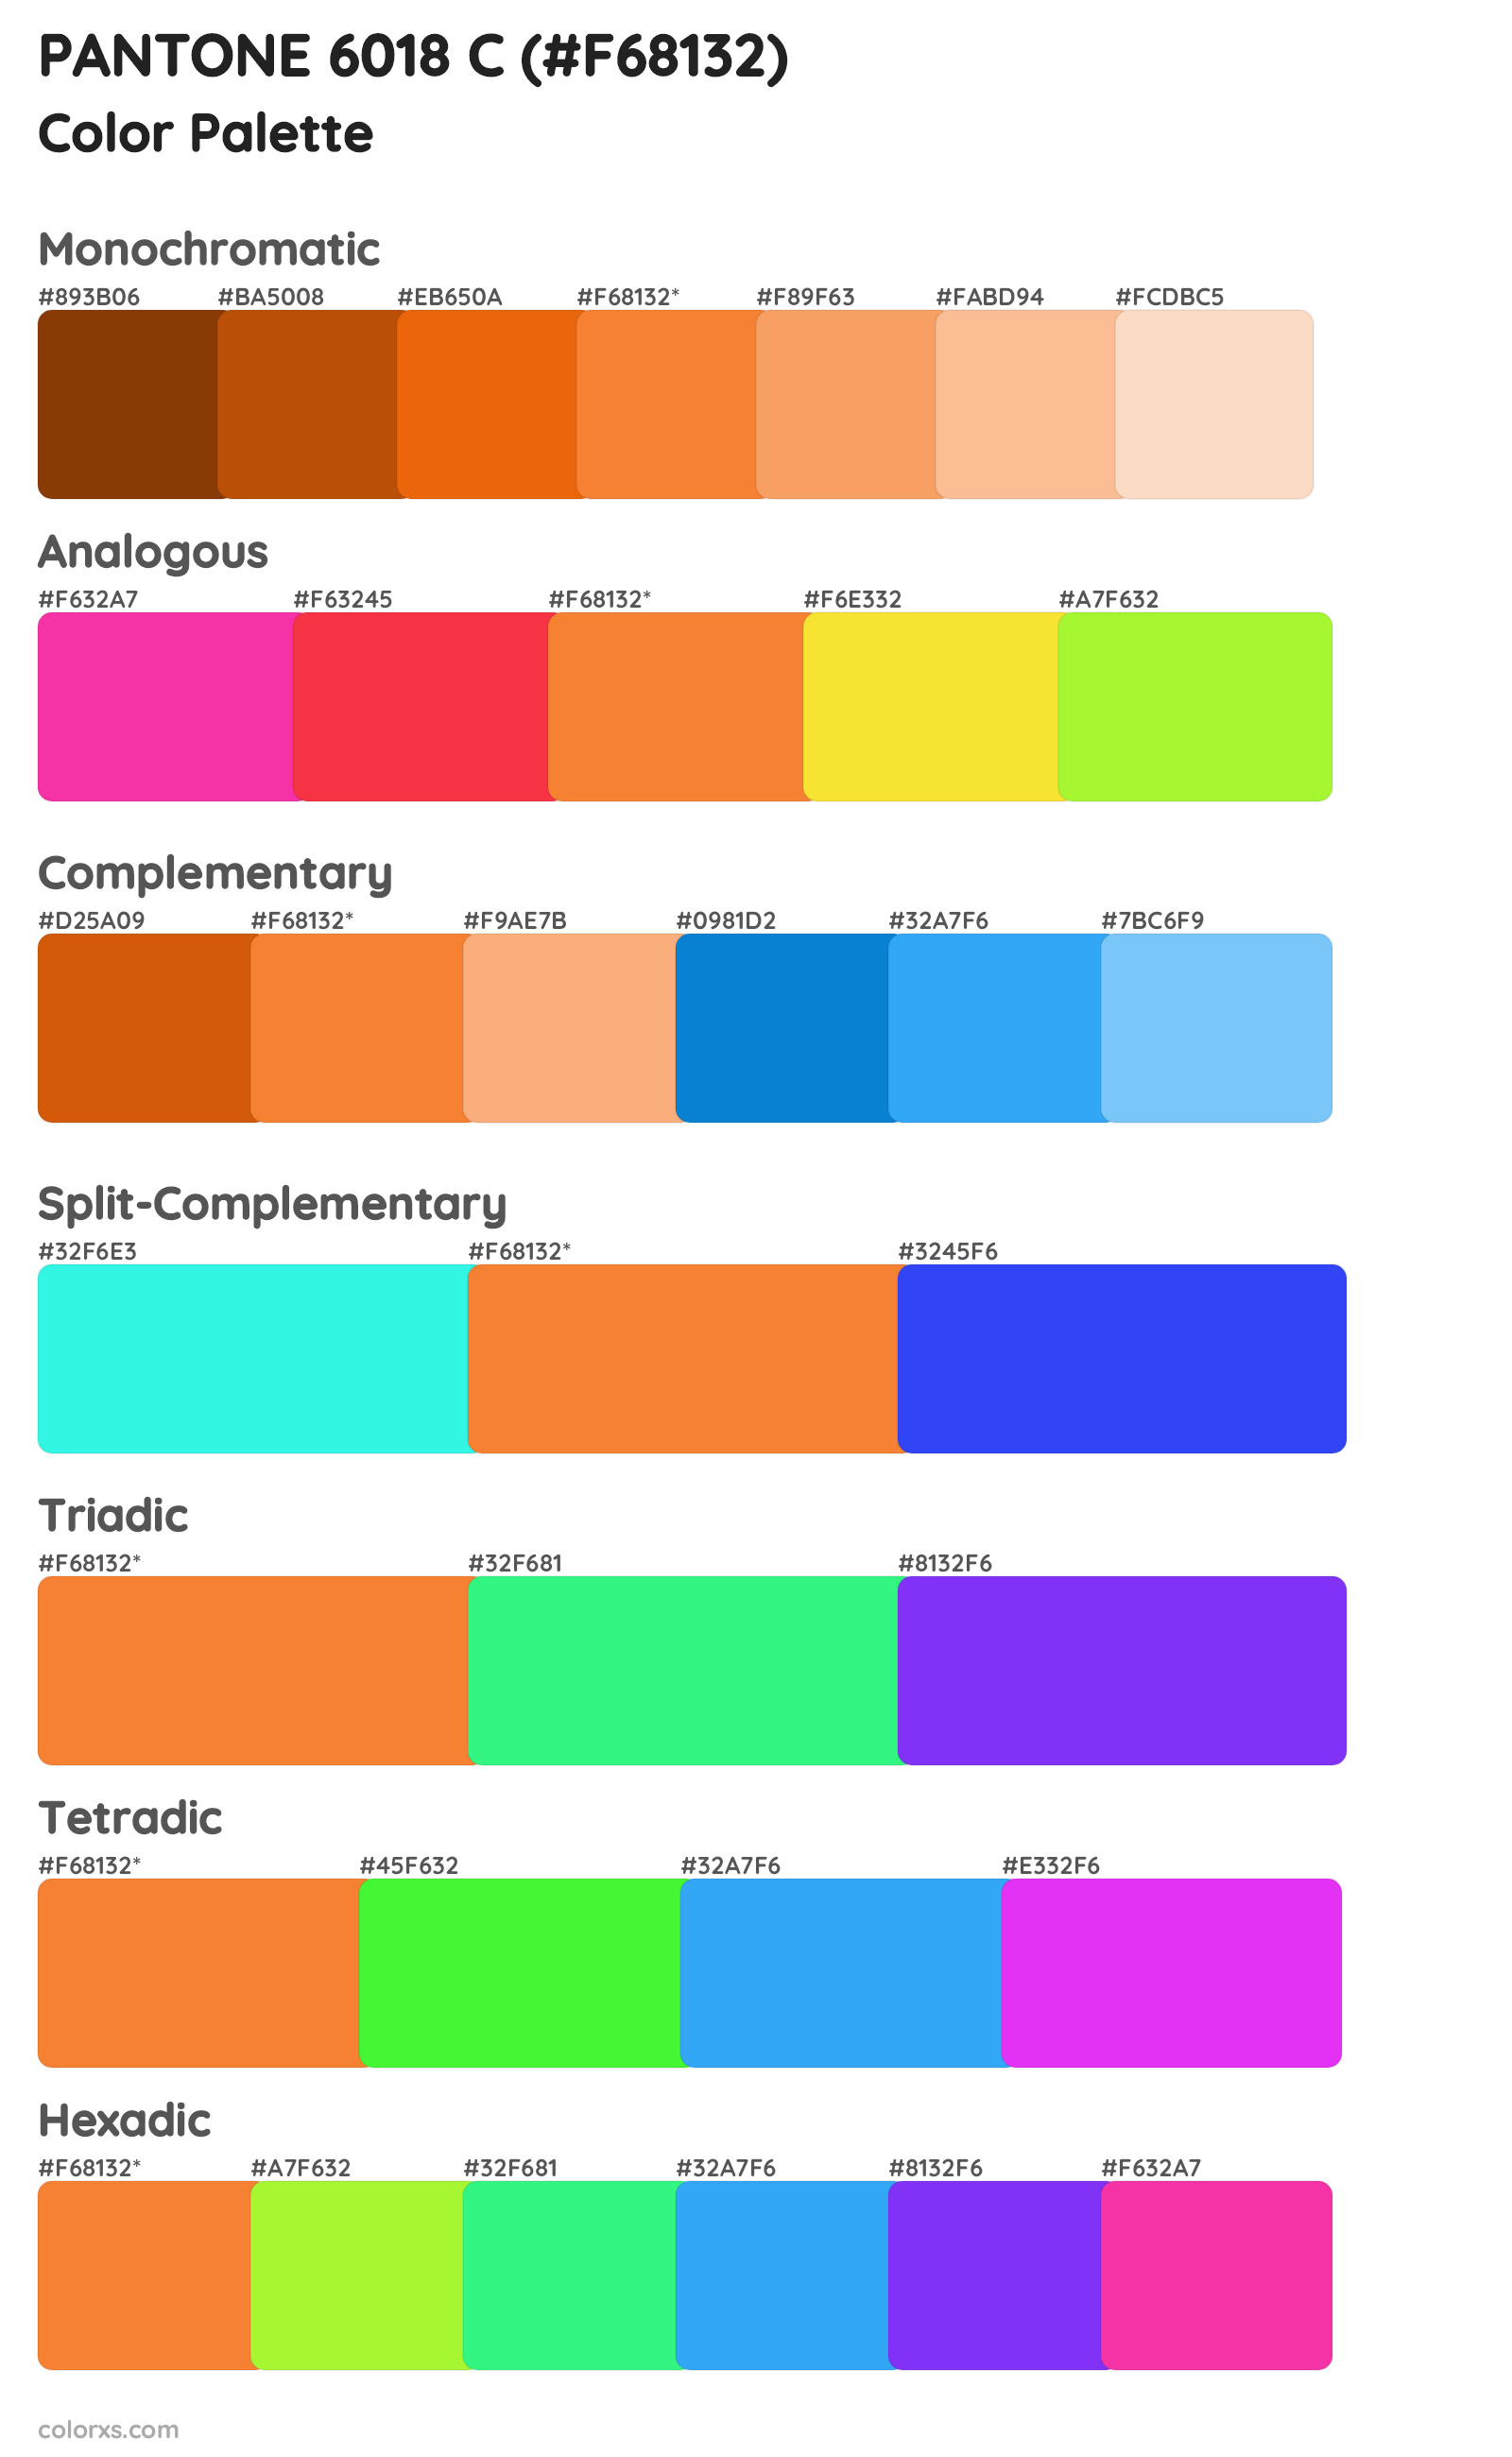 PANTONE 6018 C Color Scheme Palettes